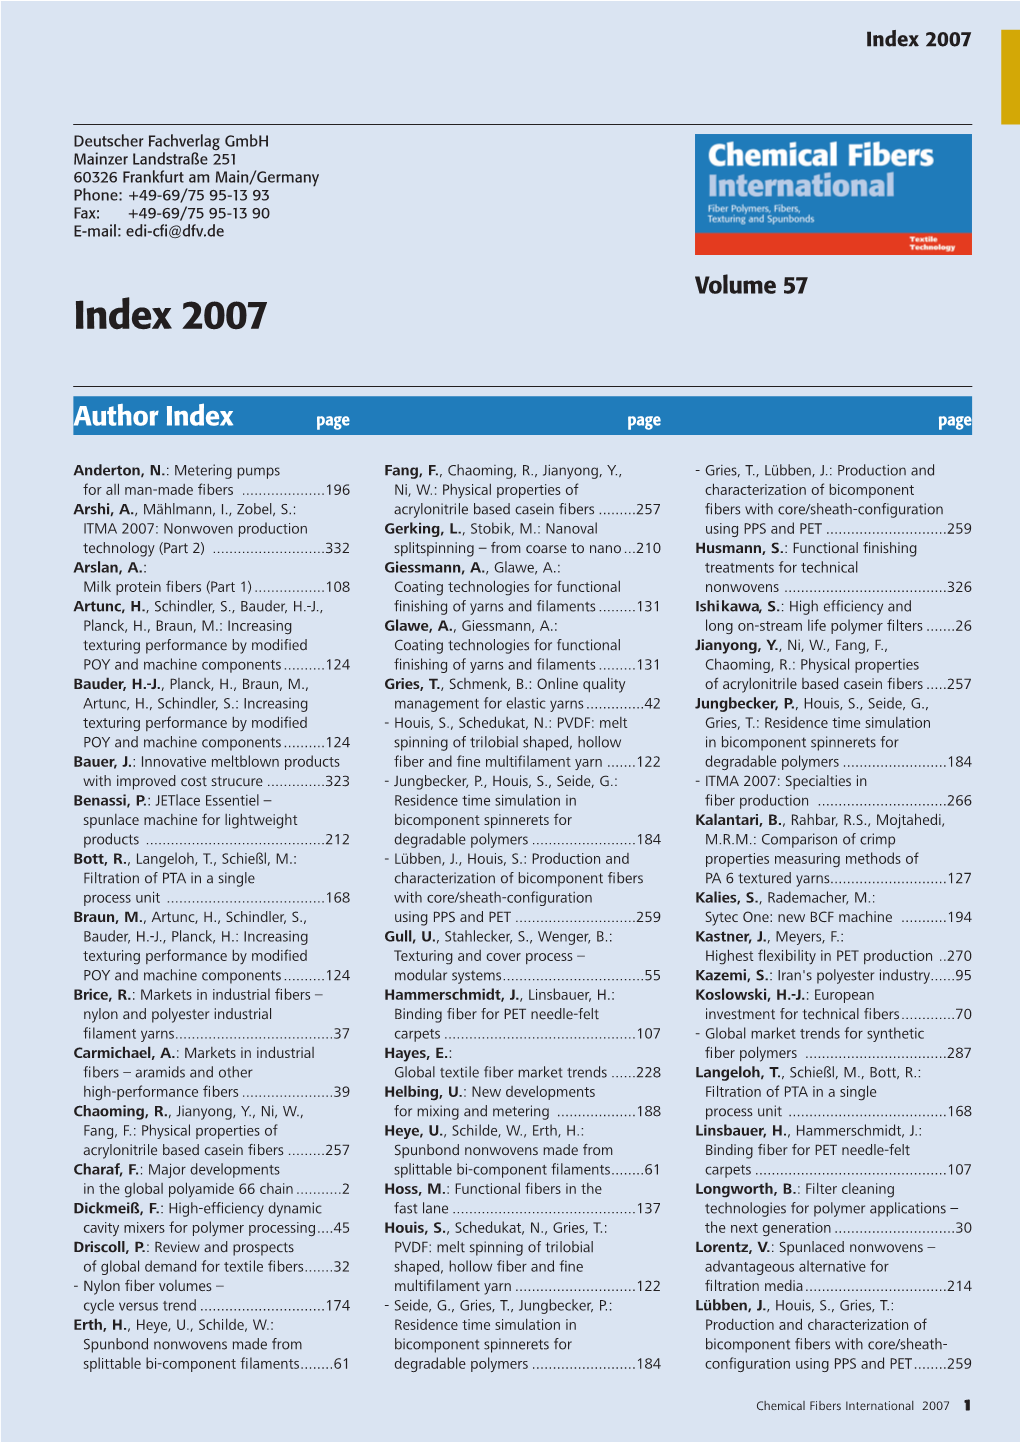 CFI-Index 2007:Jahresregister.Qxd